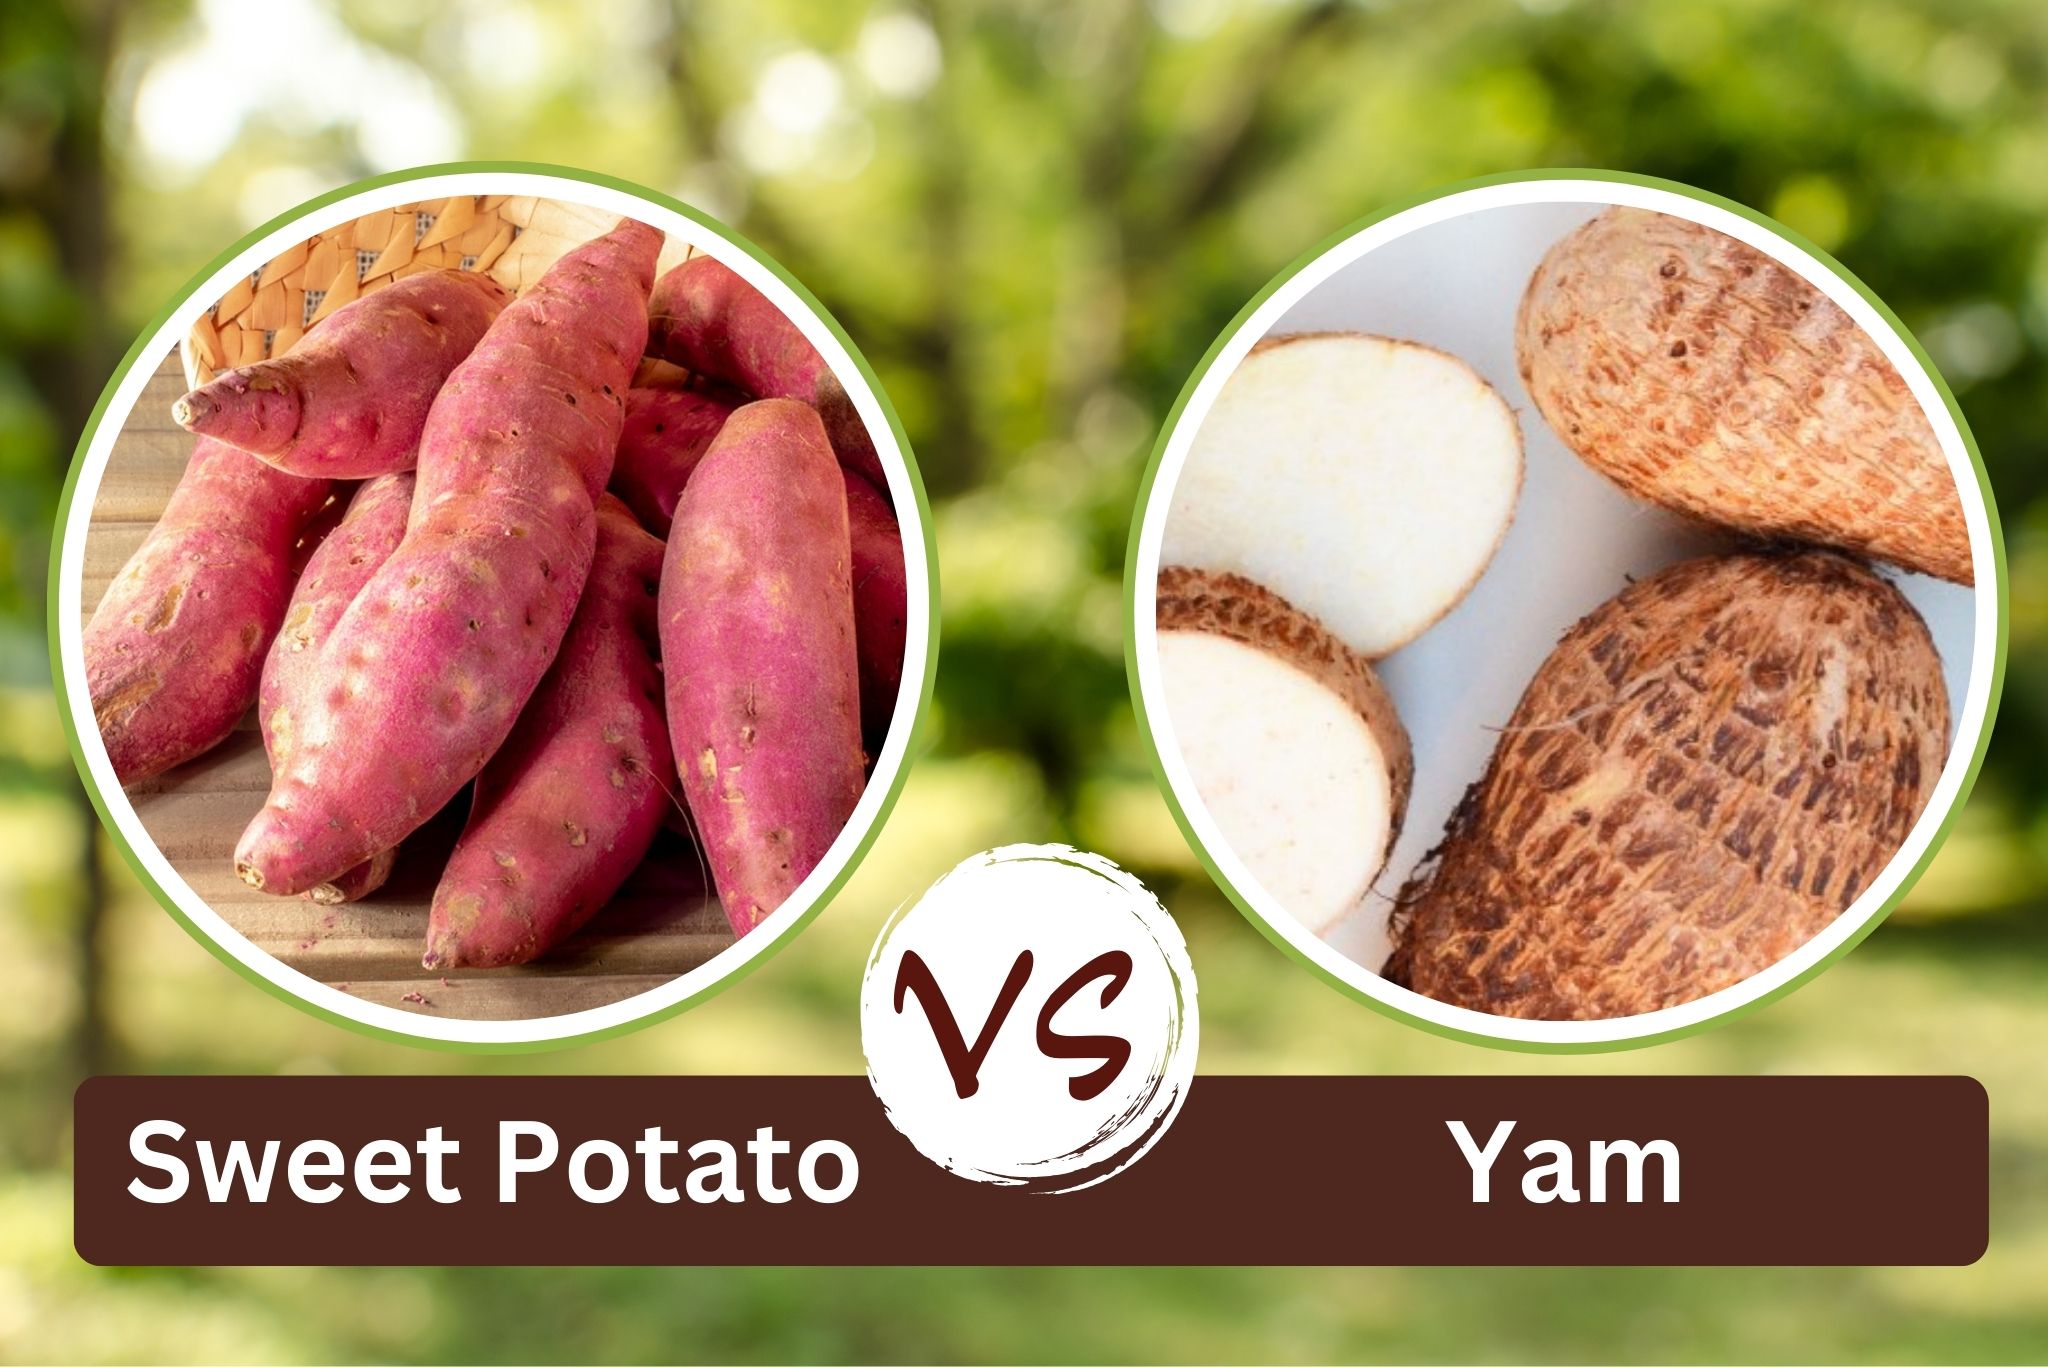 Sweet potato vs yam